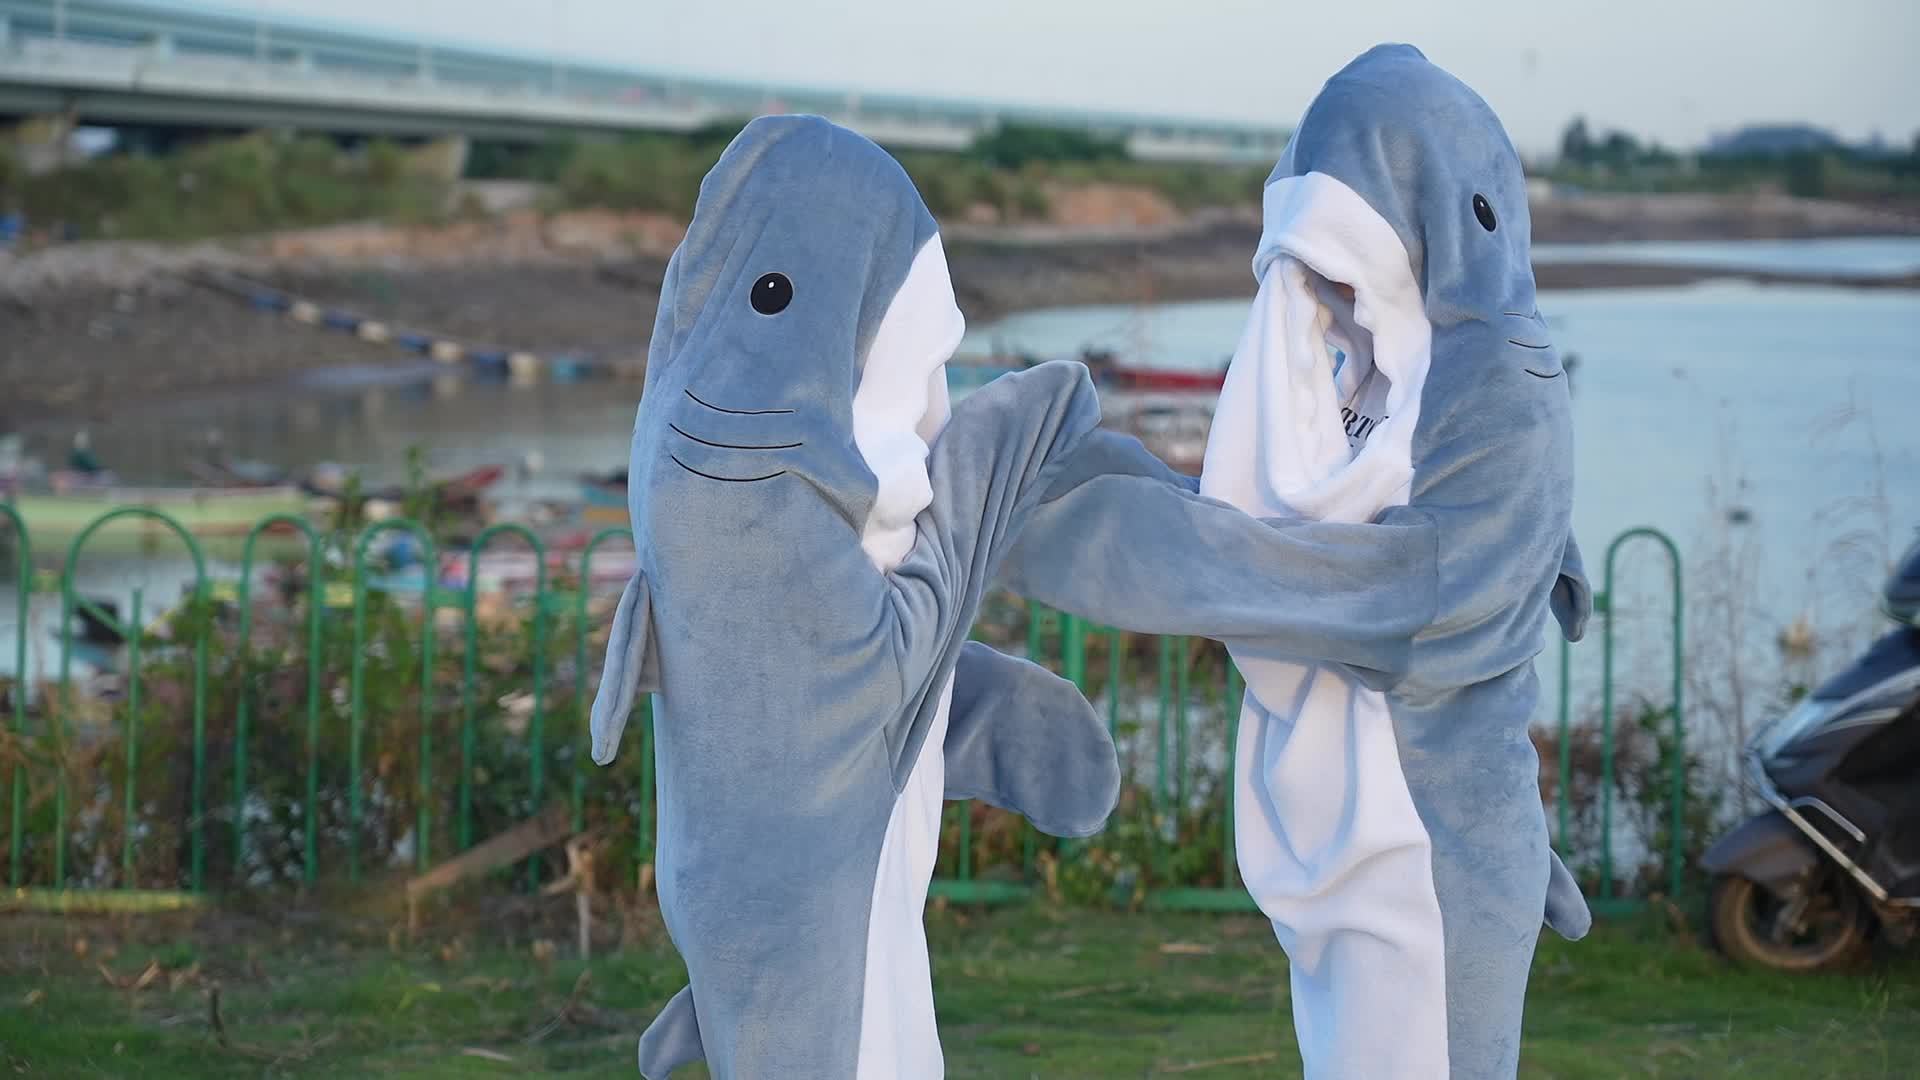 Coperta di squalo per ragazzi ragazze super morbido accogliente flanella  felpa con cappuccio coda di squalo felpa in pile indossabile gettare coperta  bambini cosplay costume da squalo regali di squalo per squalo